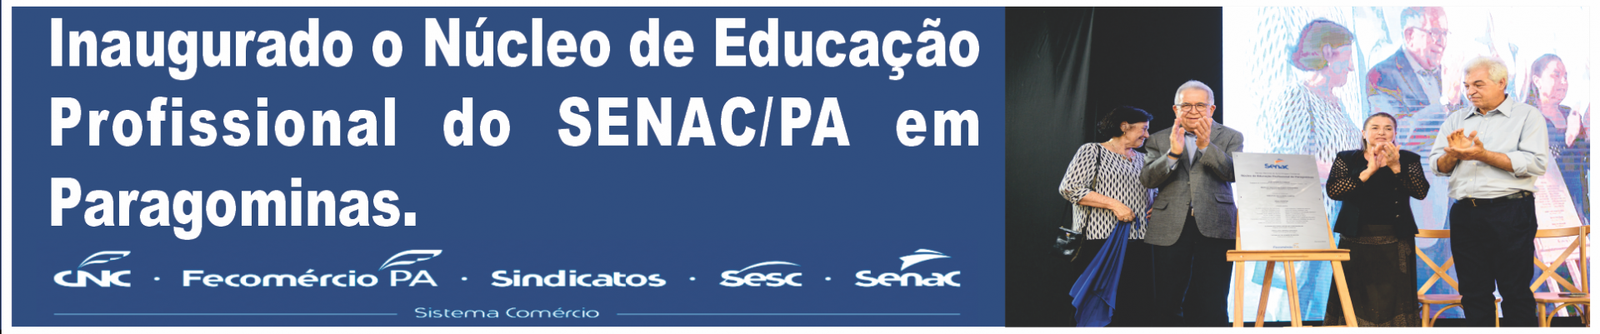 Inauguração Núcleo de Educação Profissional do SENAC em Paragominas